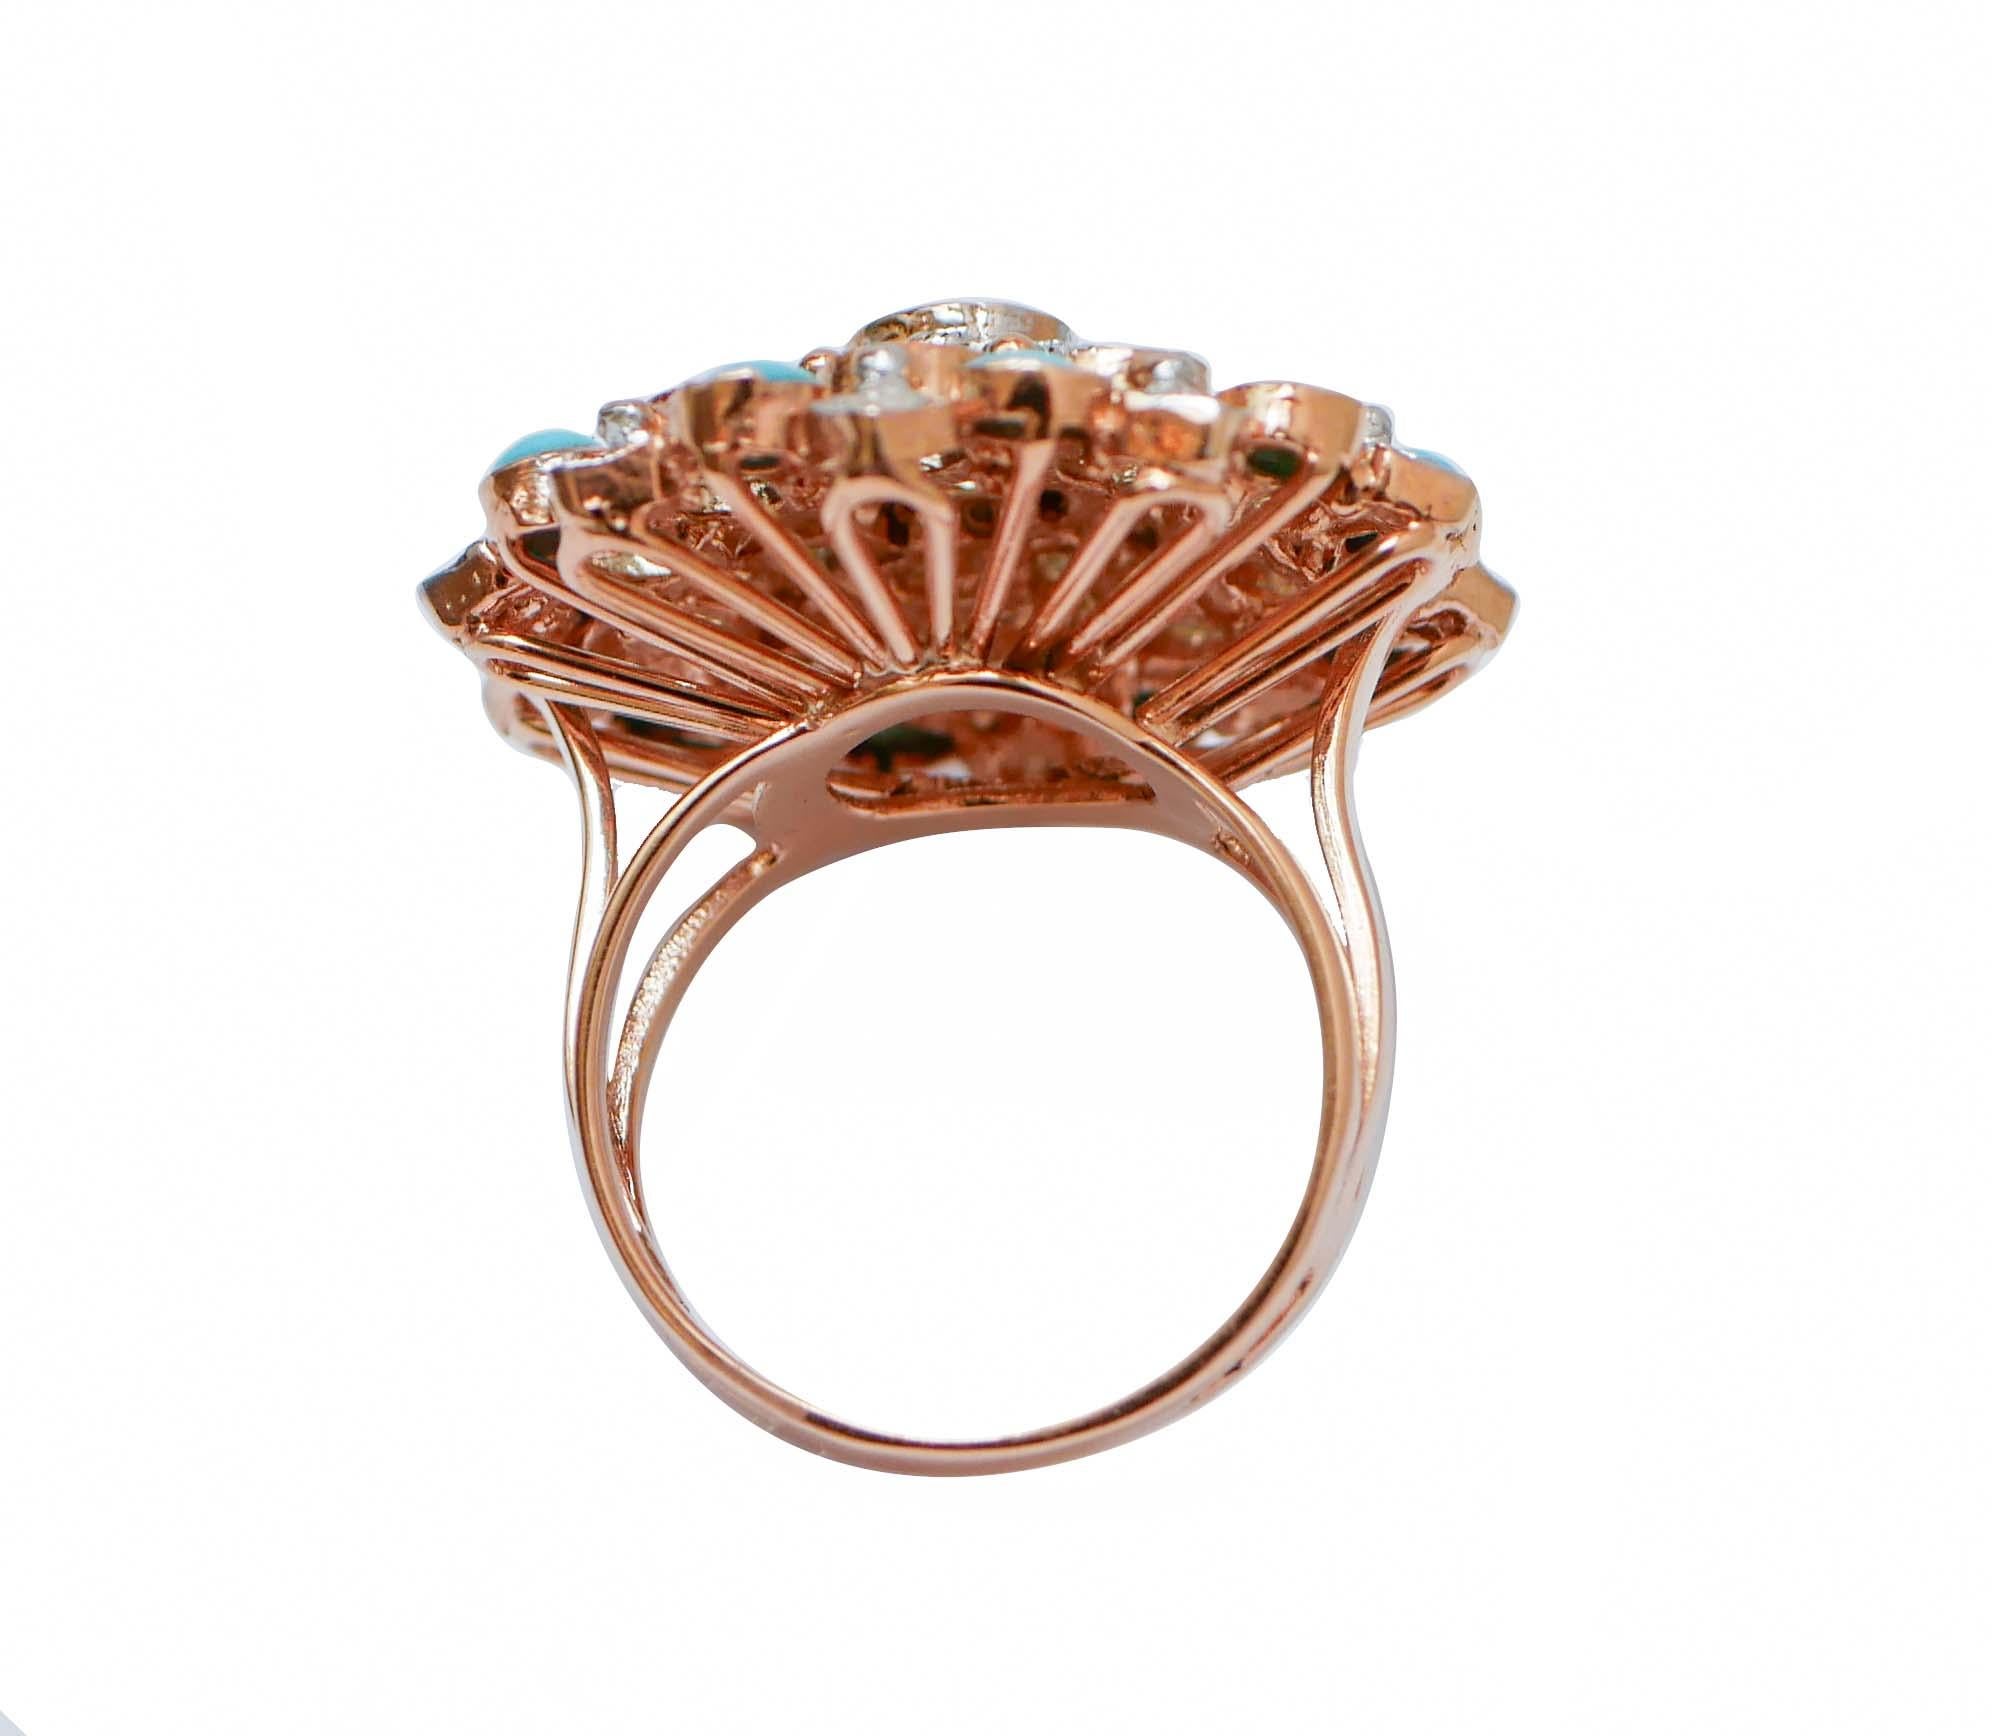 Rétro Bague en or rose et argent avec turquoise, topaze de couleur aigue-marine, diamants